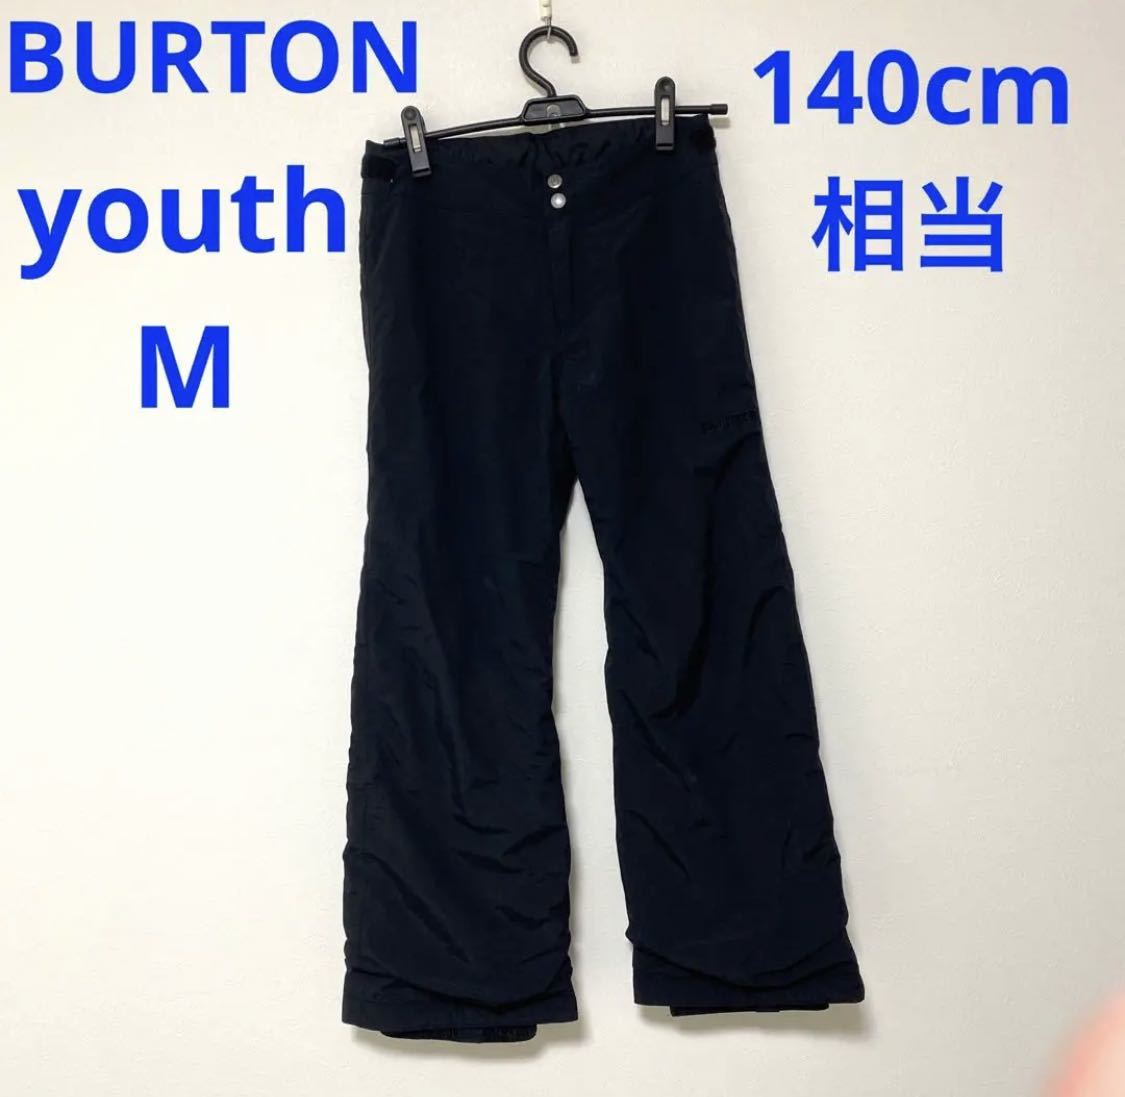 最新入荷】 【140cm】BURTON キッズ スノーボード パンツ youth M